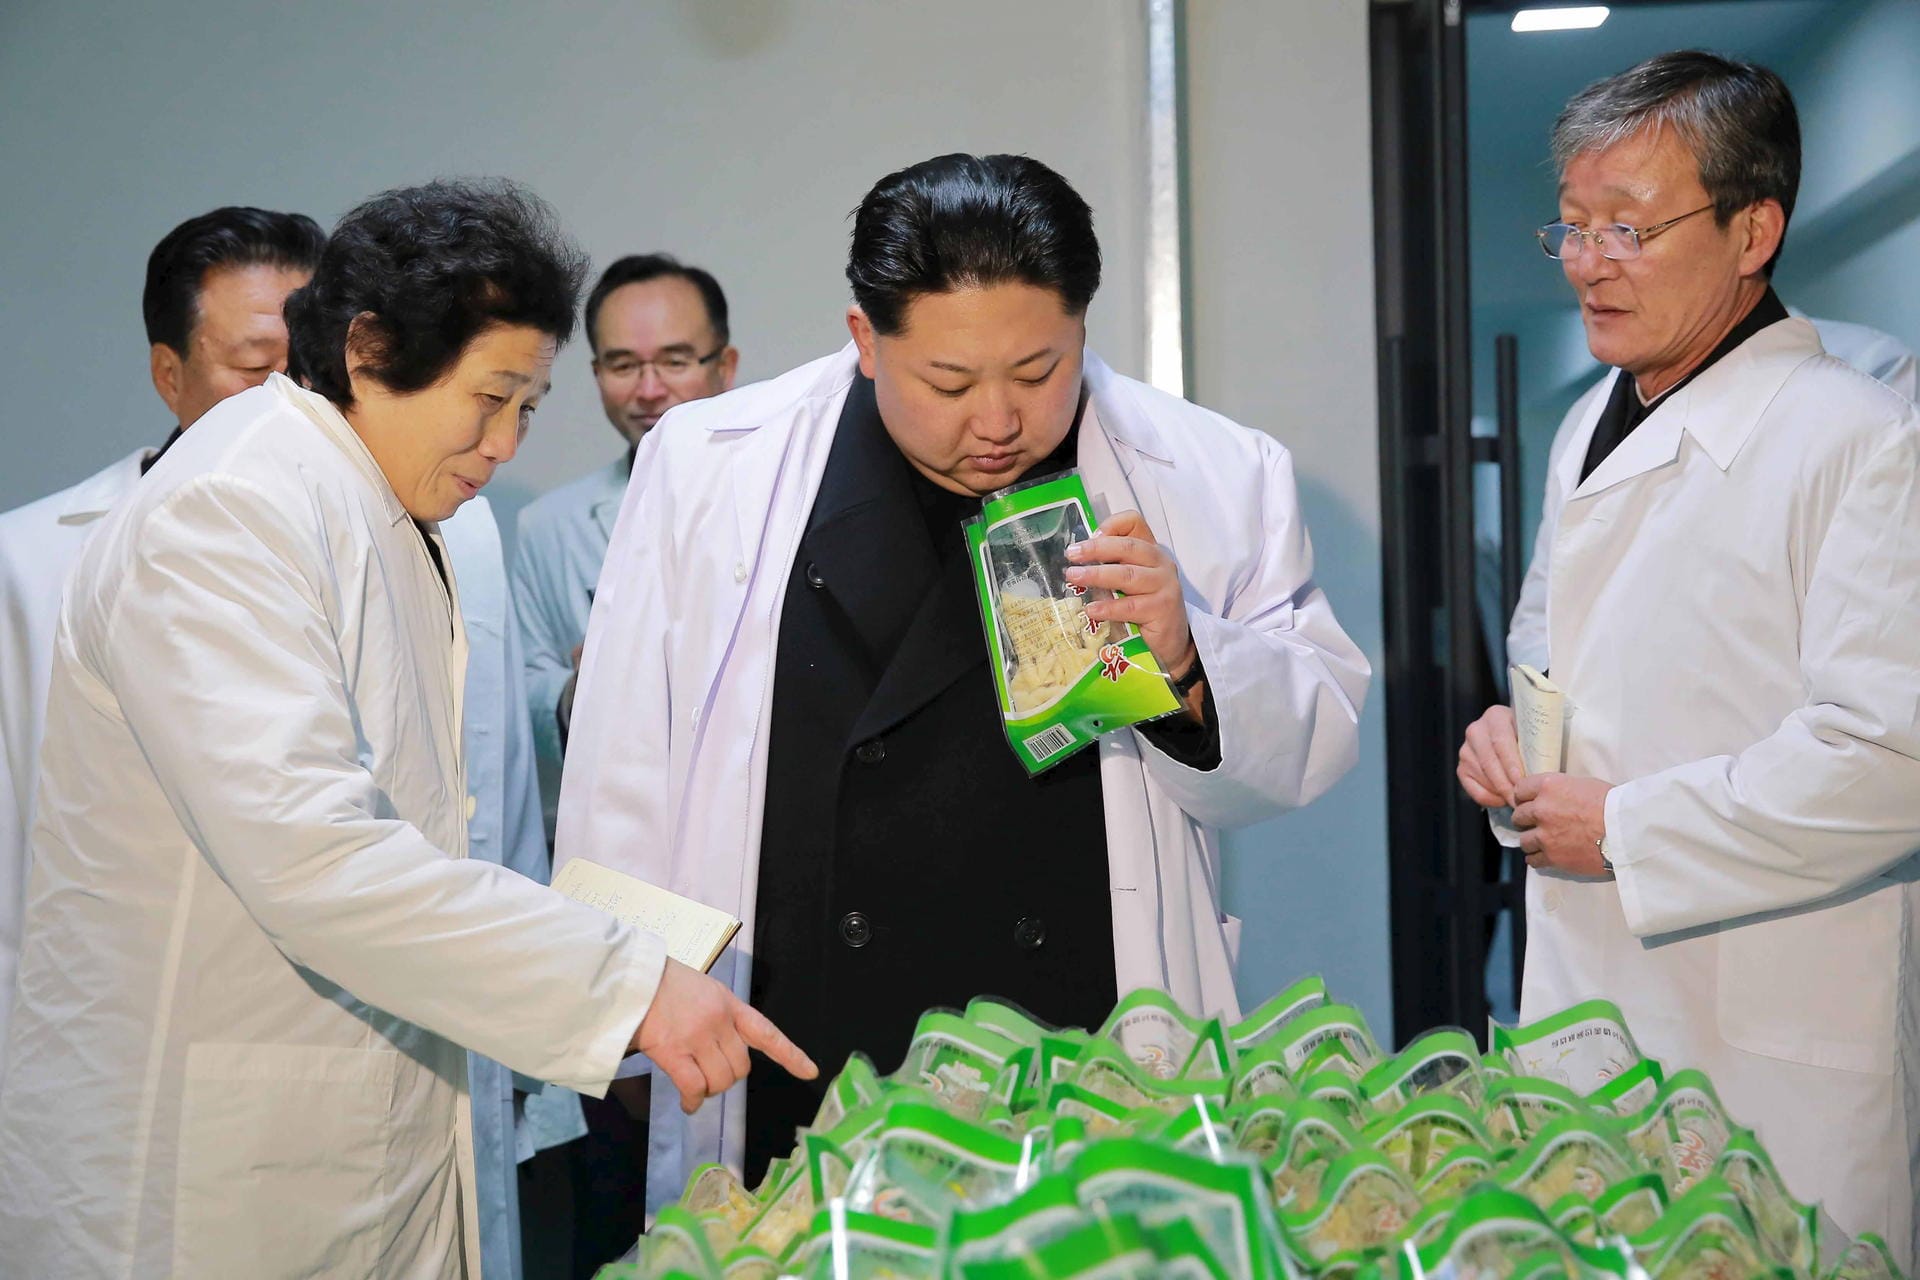 Fabrikbesuche stehen bei Nordkoreas Machthaber Kim hoch im Kurs. Hier überprüft er frisch produzierte Lebensmittel ganz genau. So zeigt er: Der große Anführer hat alles unter Kontrolle.